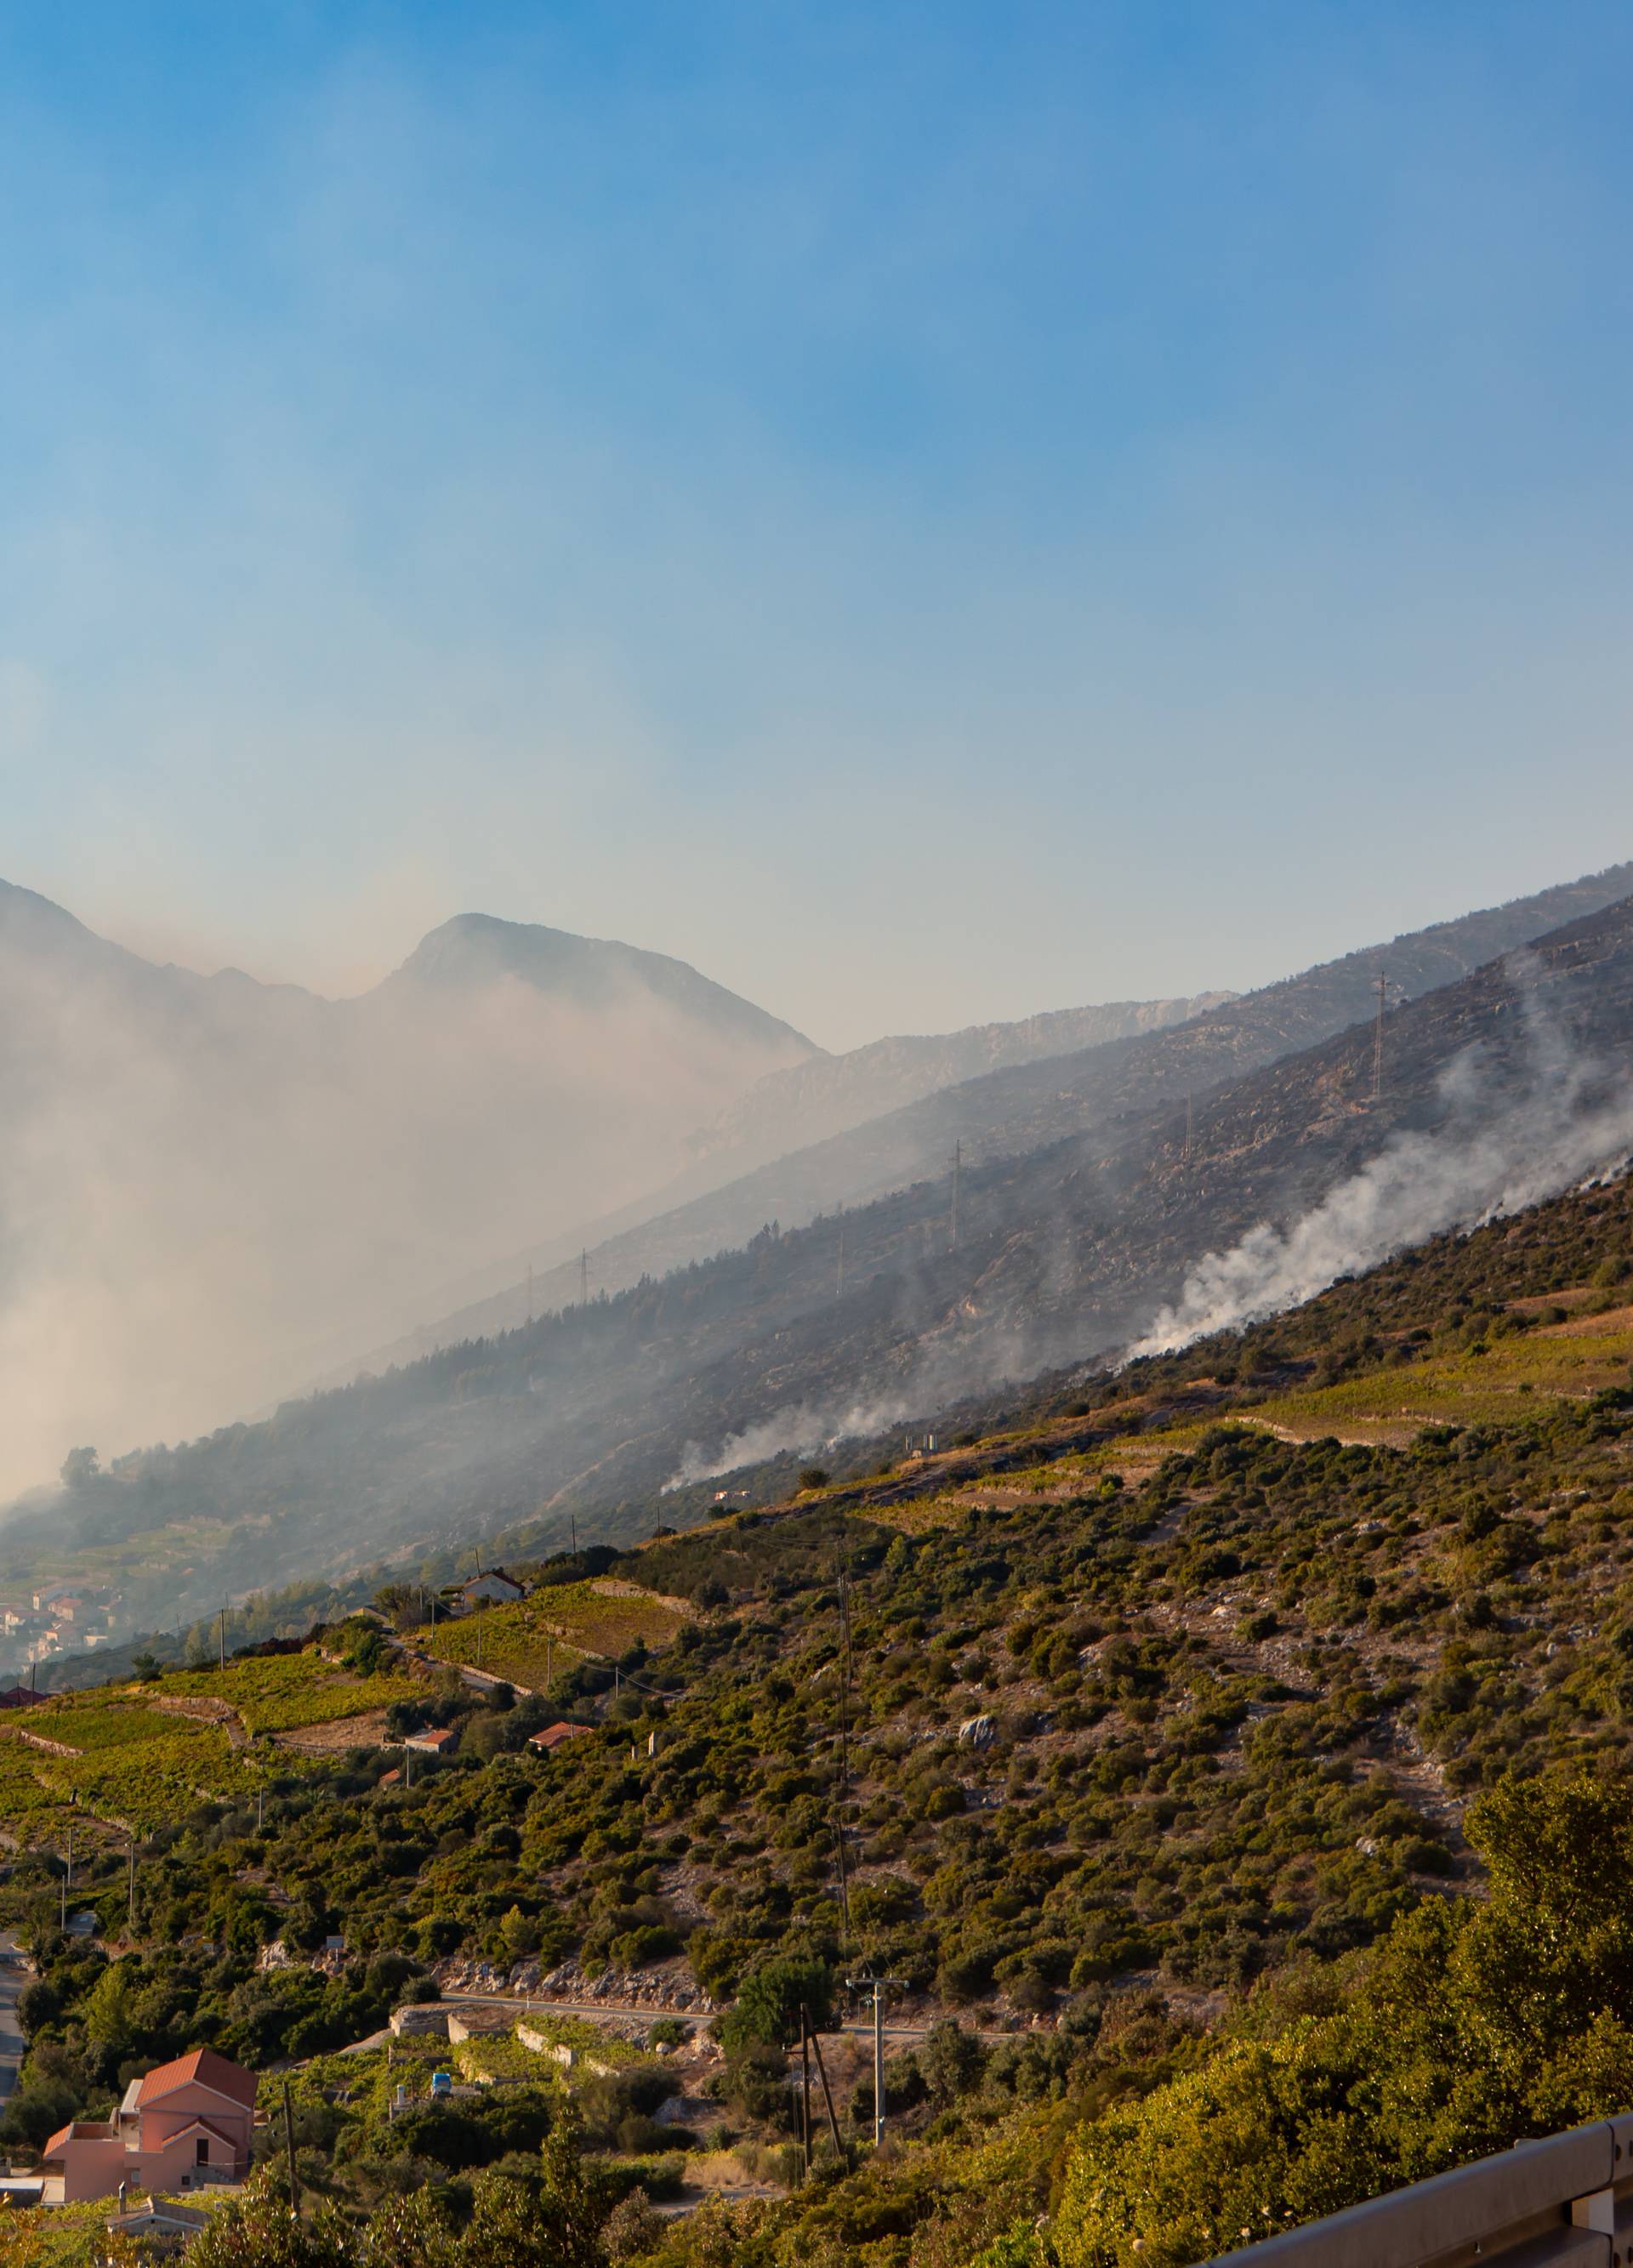 Požari na jugu Hrvatske su pod nadzorom, ali nisu lokalizirani